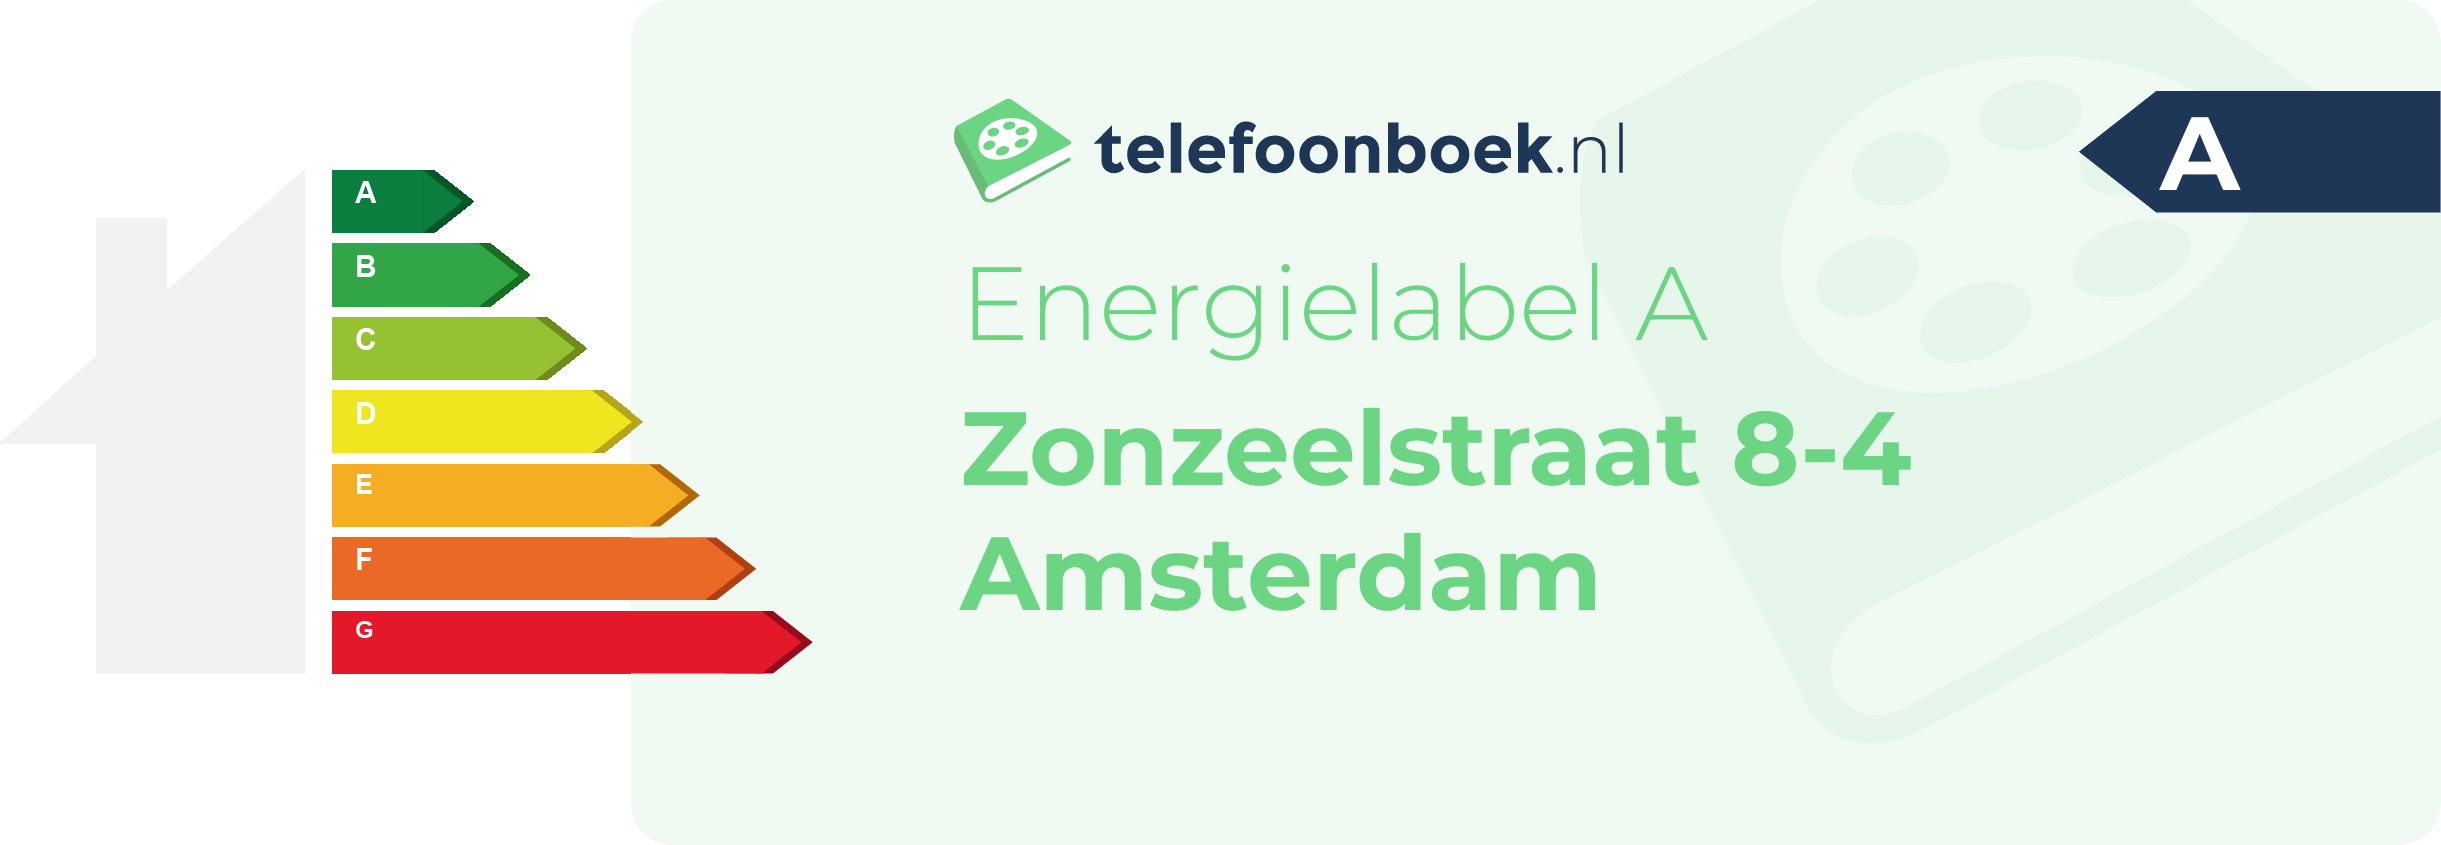 Energielabel Zonzeelstraat 8-4 Amsterdam